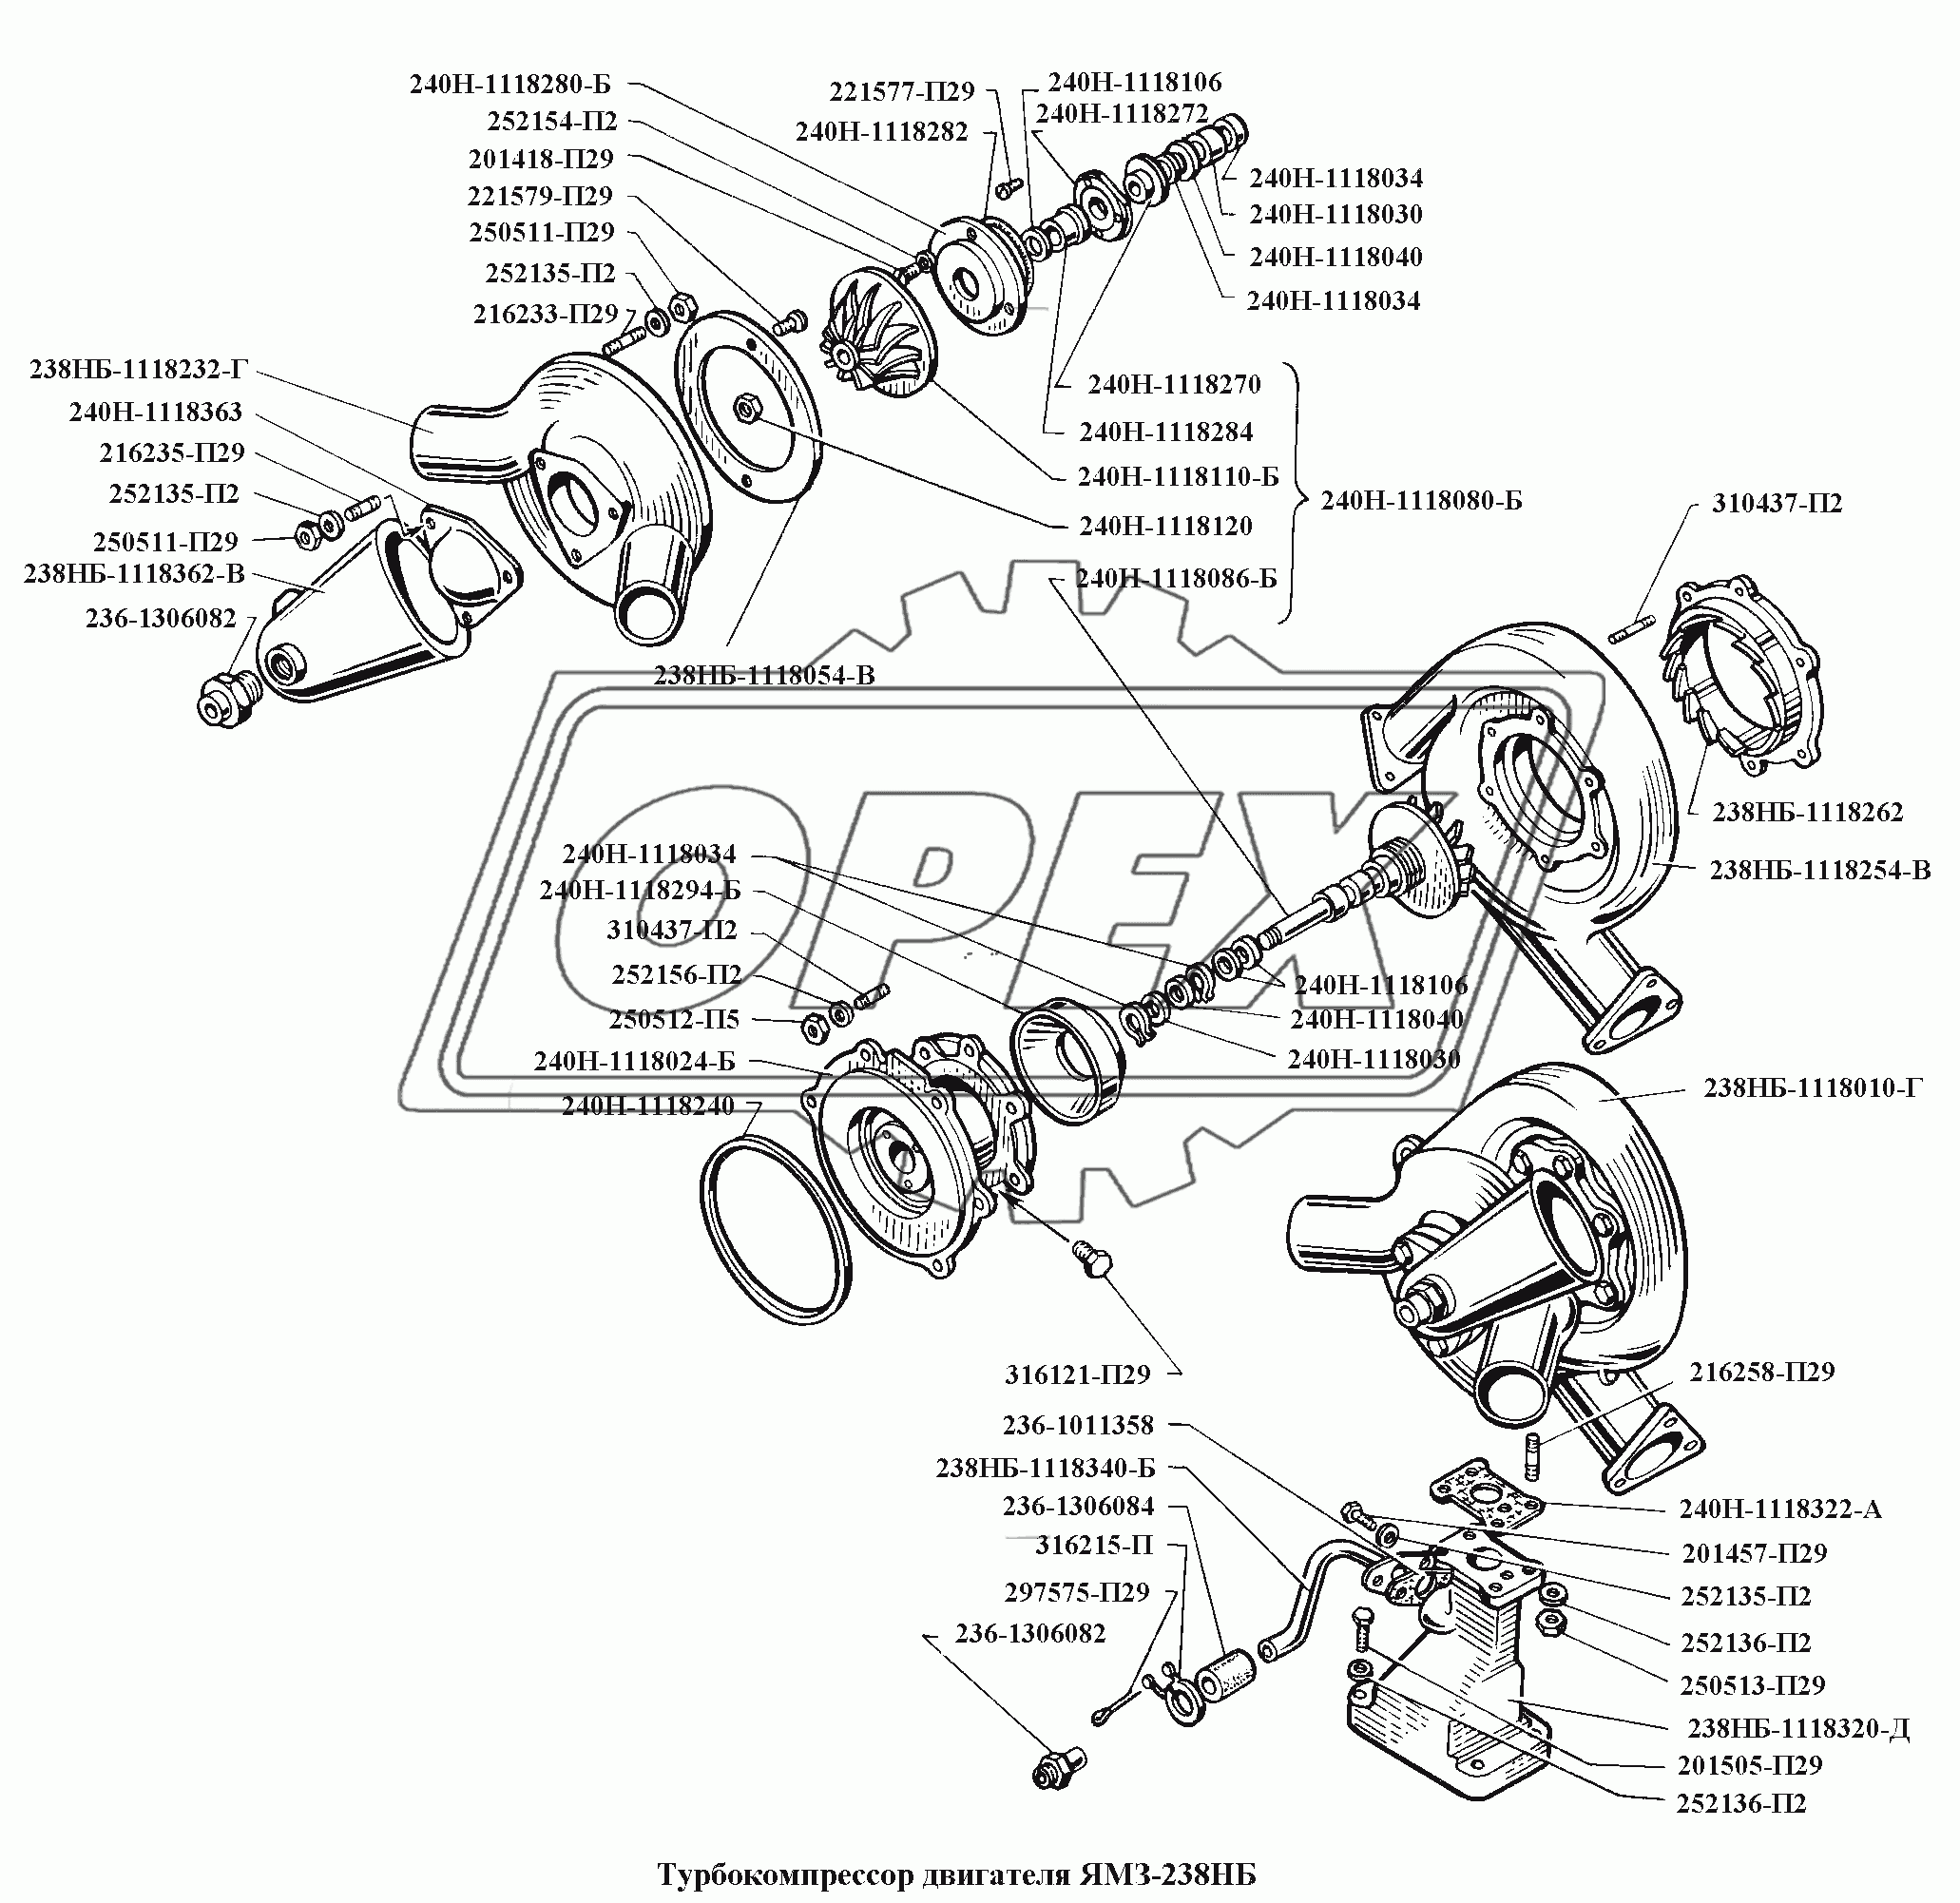 Турбокомпрессор двигателя ЯМЗ-238НБ